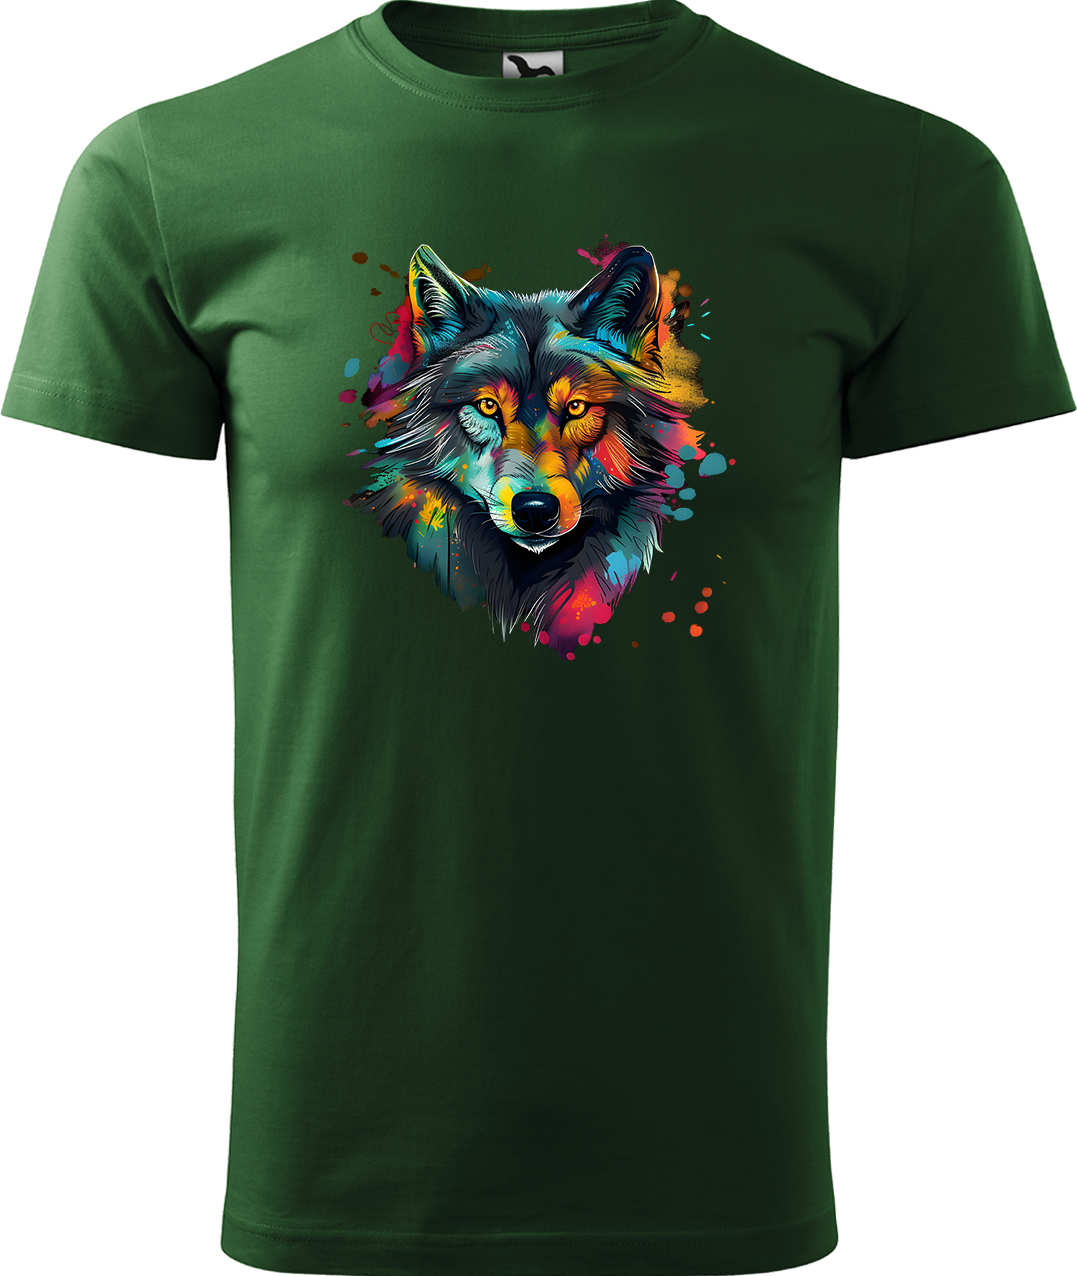 Pánské tričko s vlkem - Malovaný vlk Velikost: XL, Barva: Lahvově zelená (06), Střih: pánský